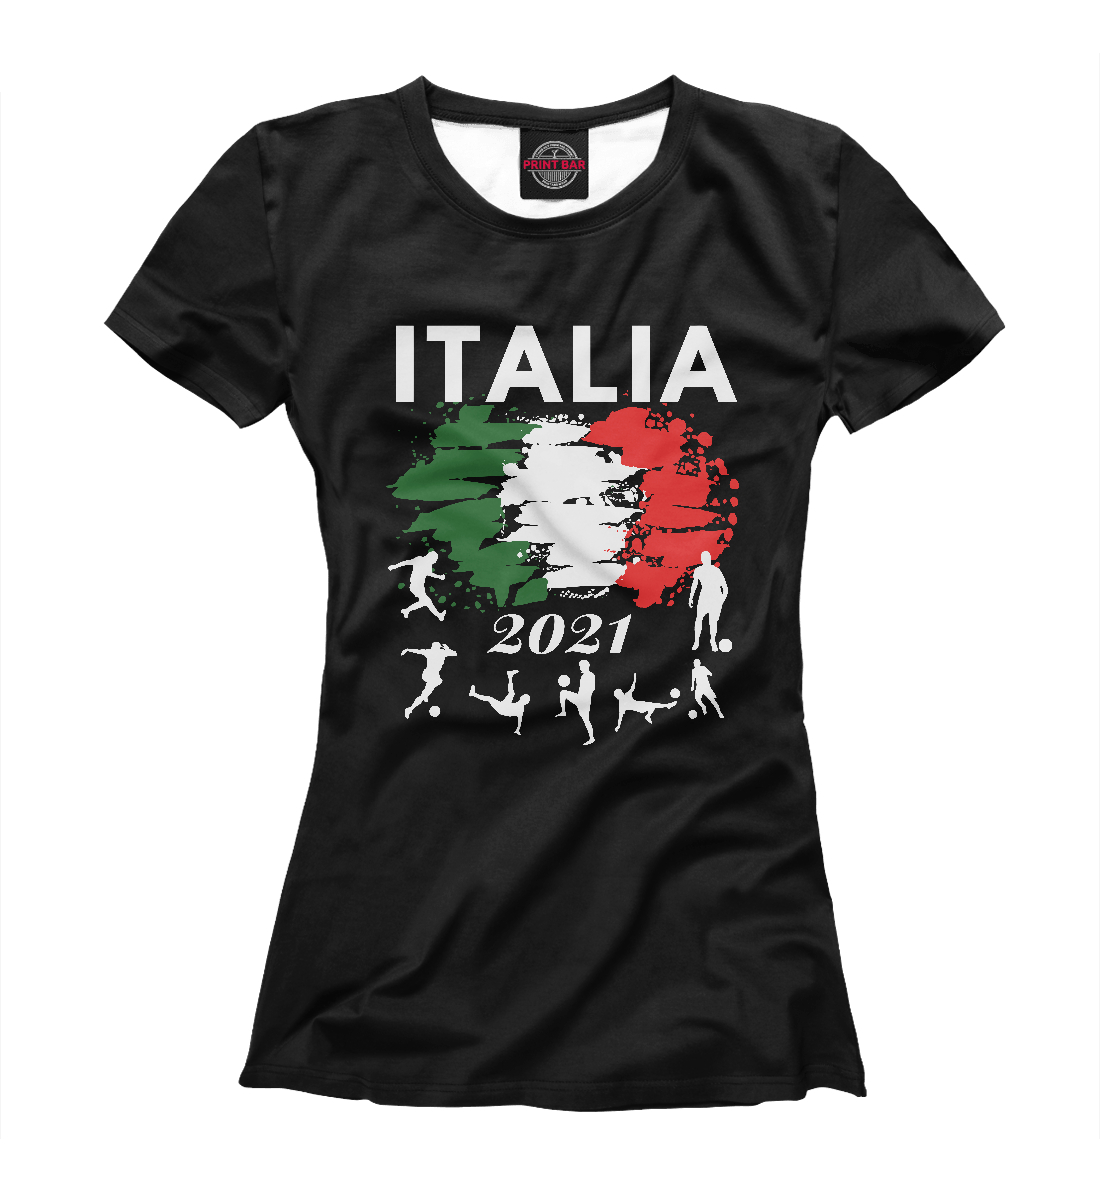 Женская Футболка Italia 2021, артикул SIT-422505-fut-1mp